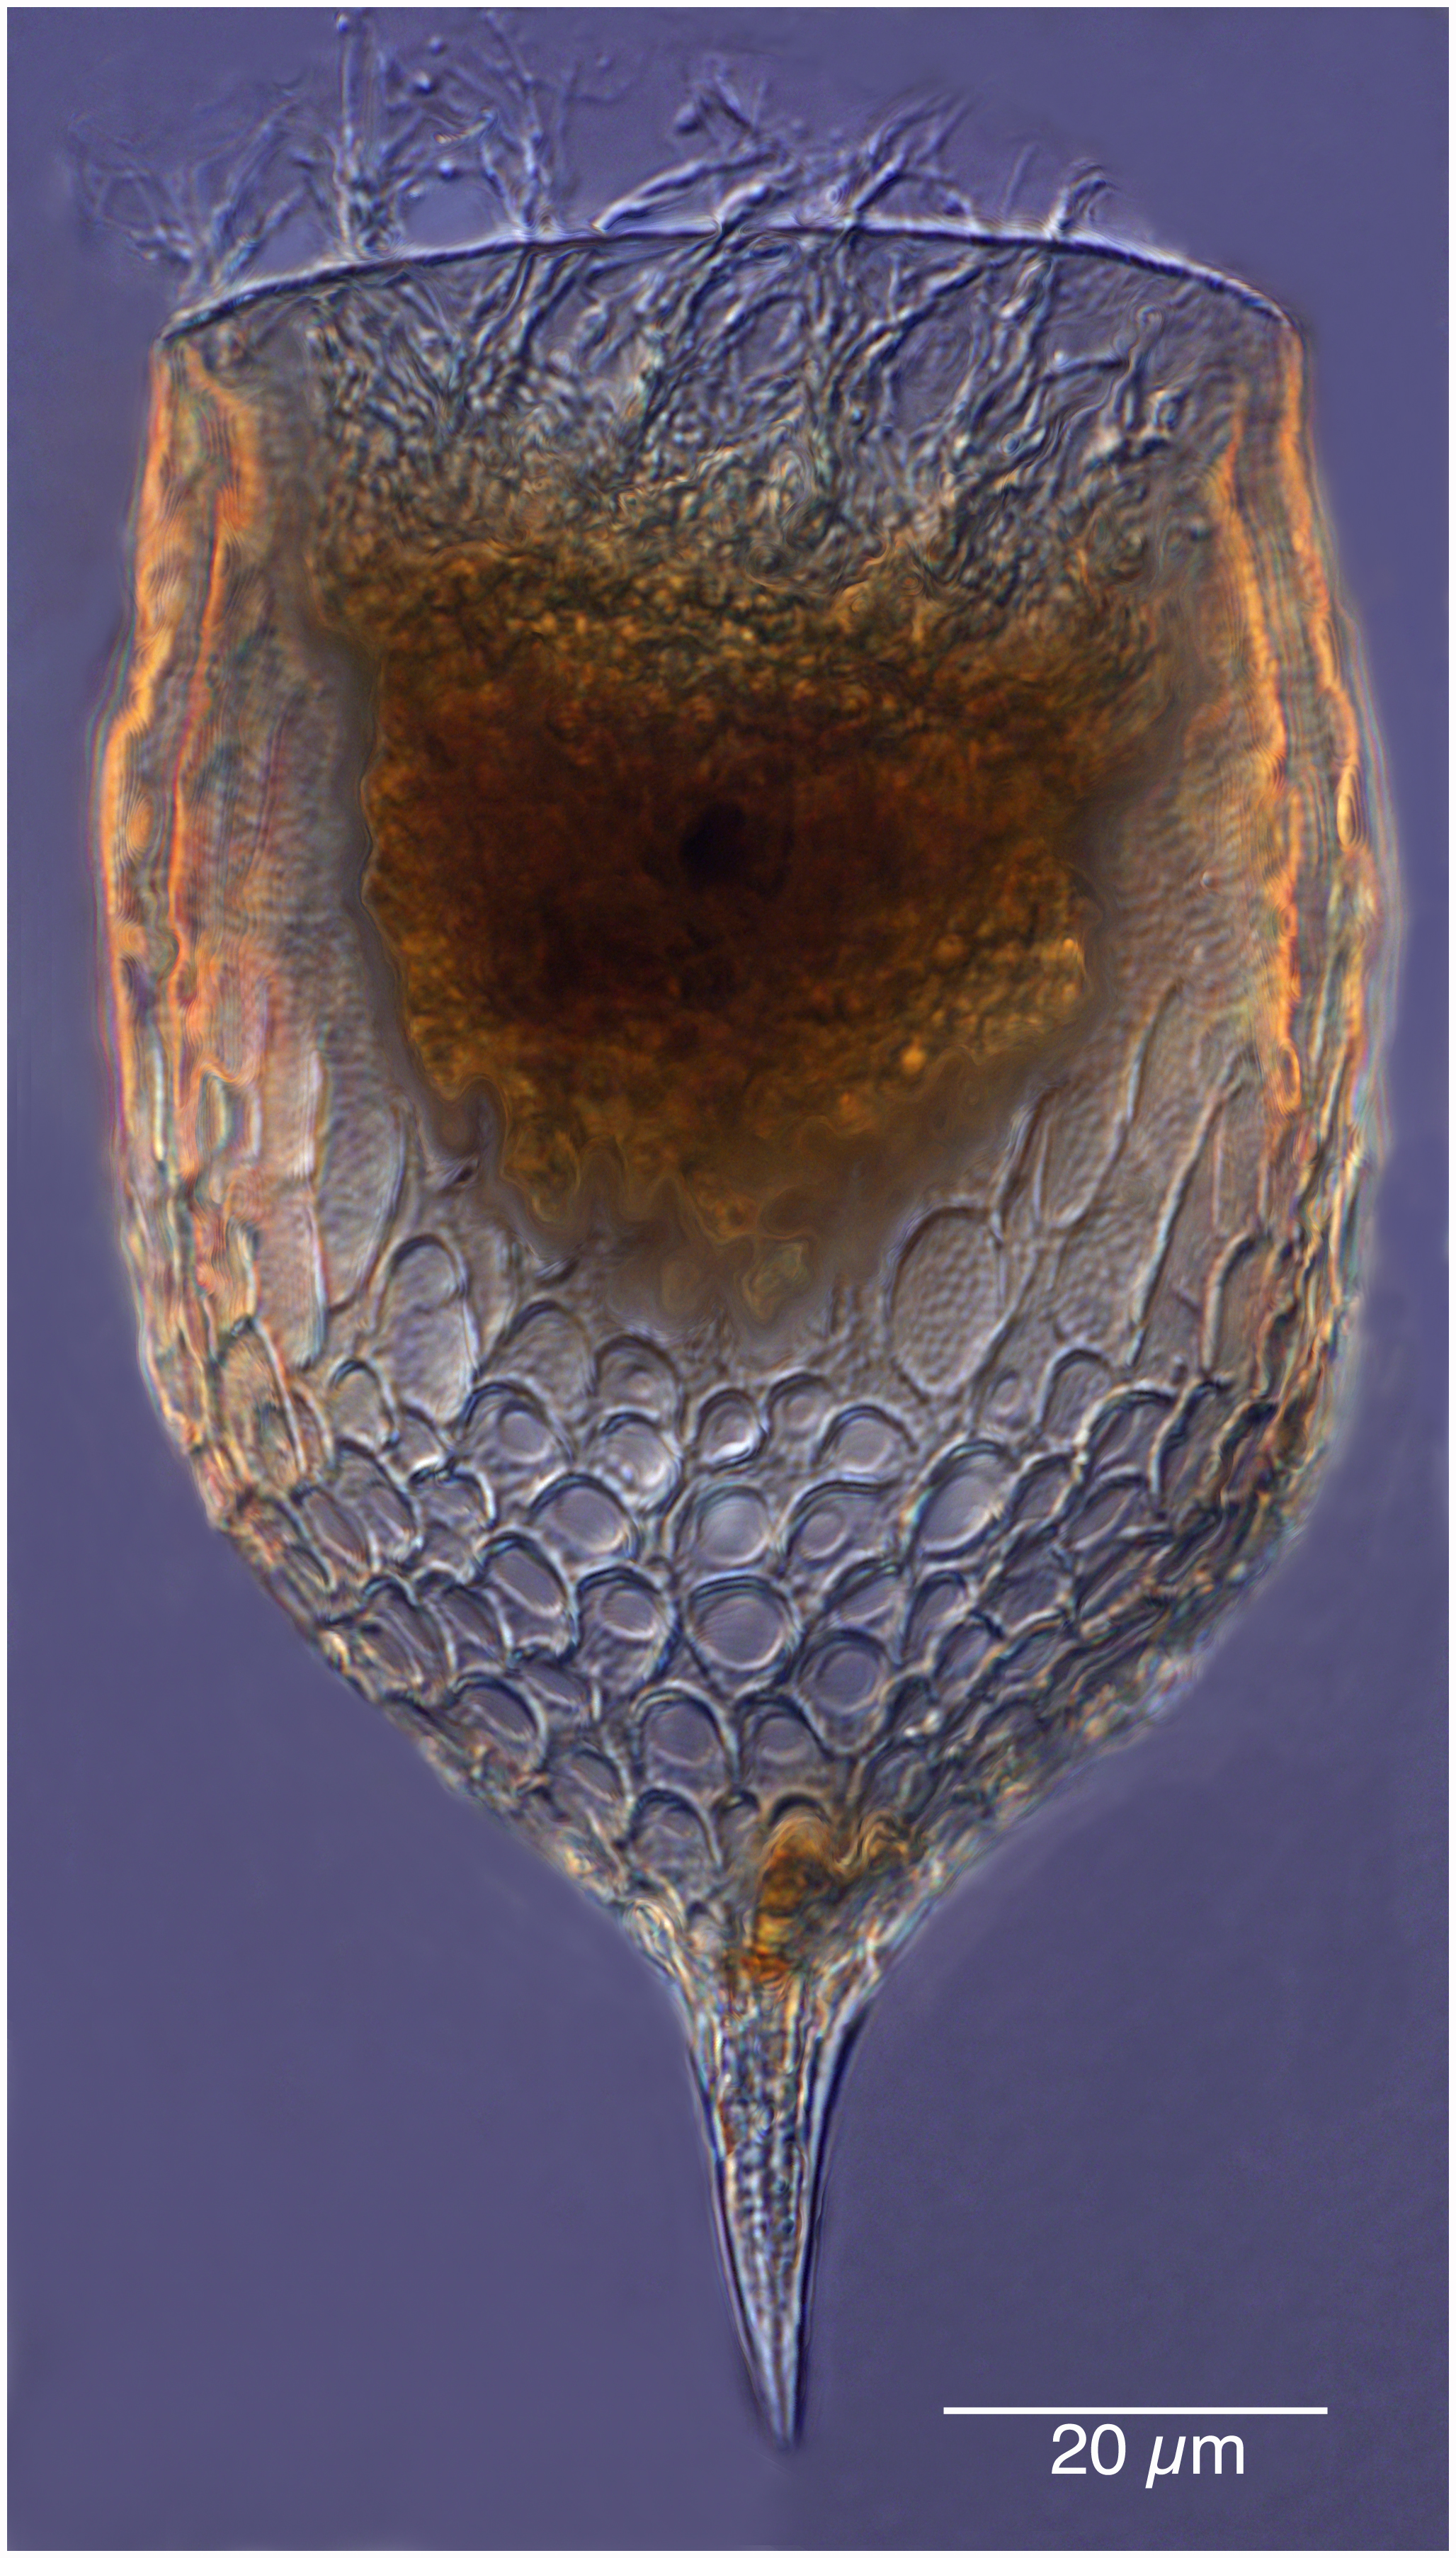 Epiplocylis undella